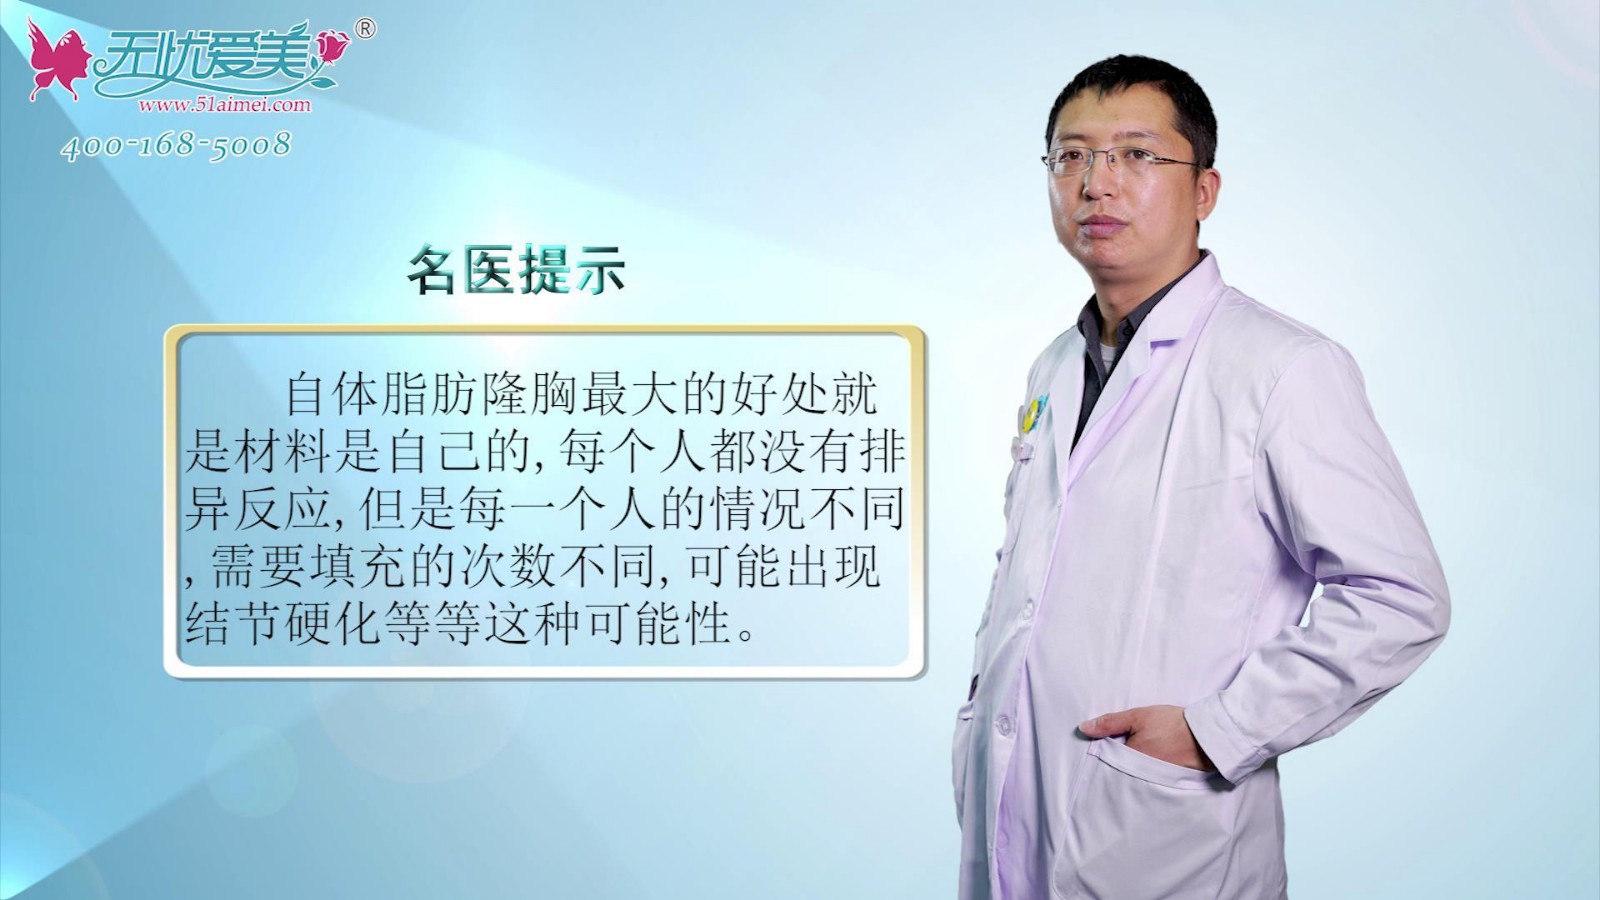 通过北京海医悦美整形李广学专访了解自体脂肪隆胸的利弊